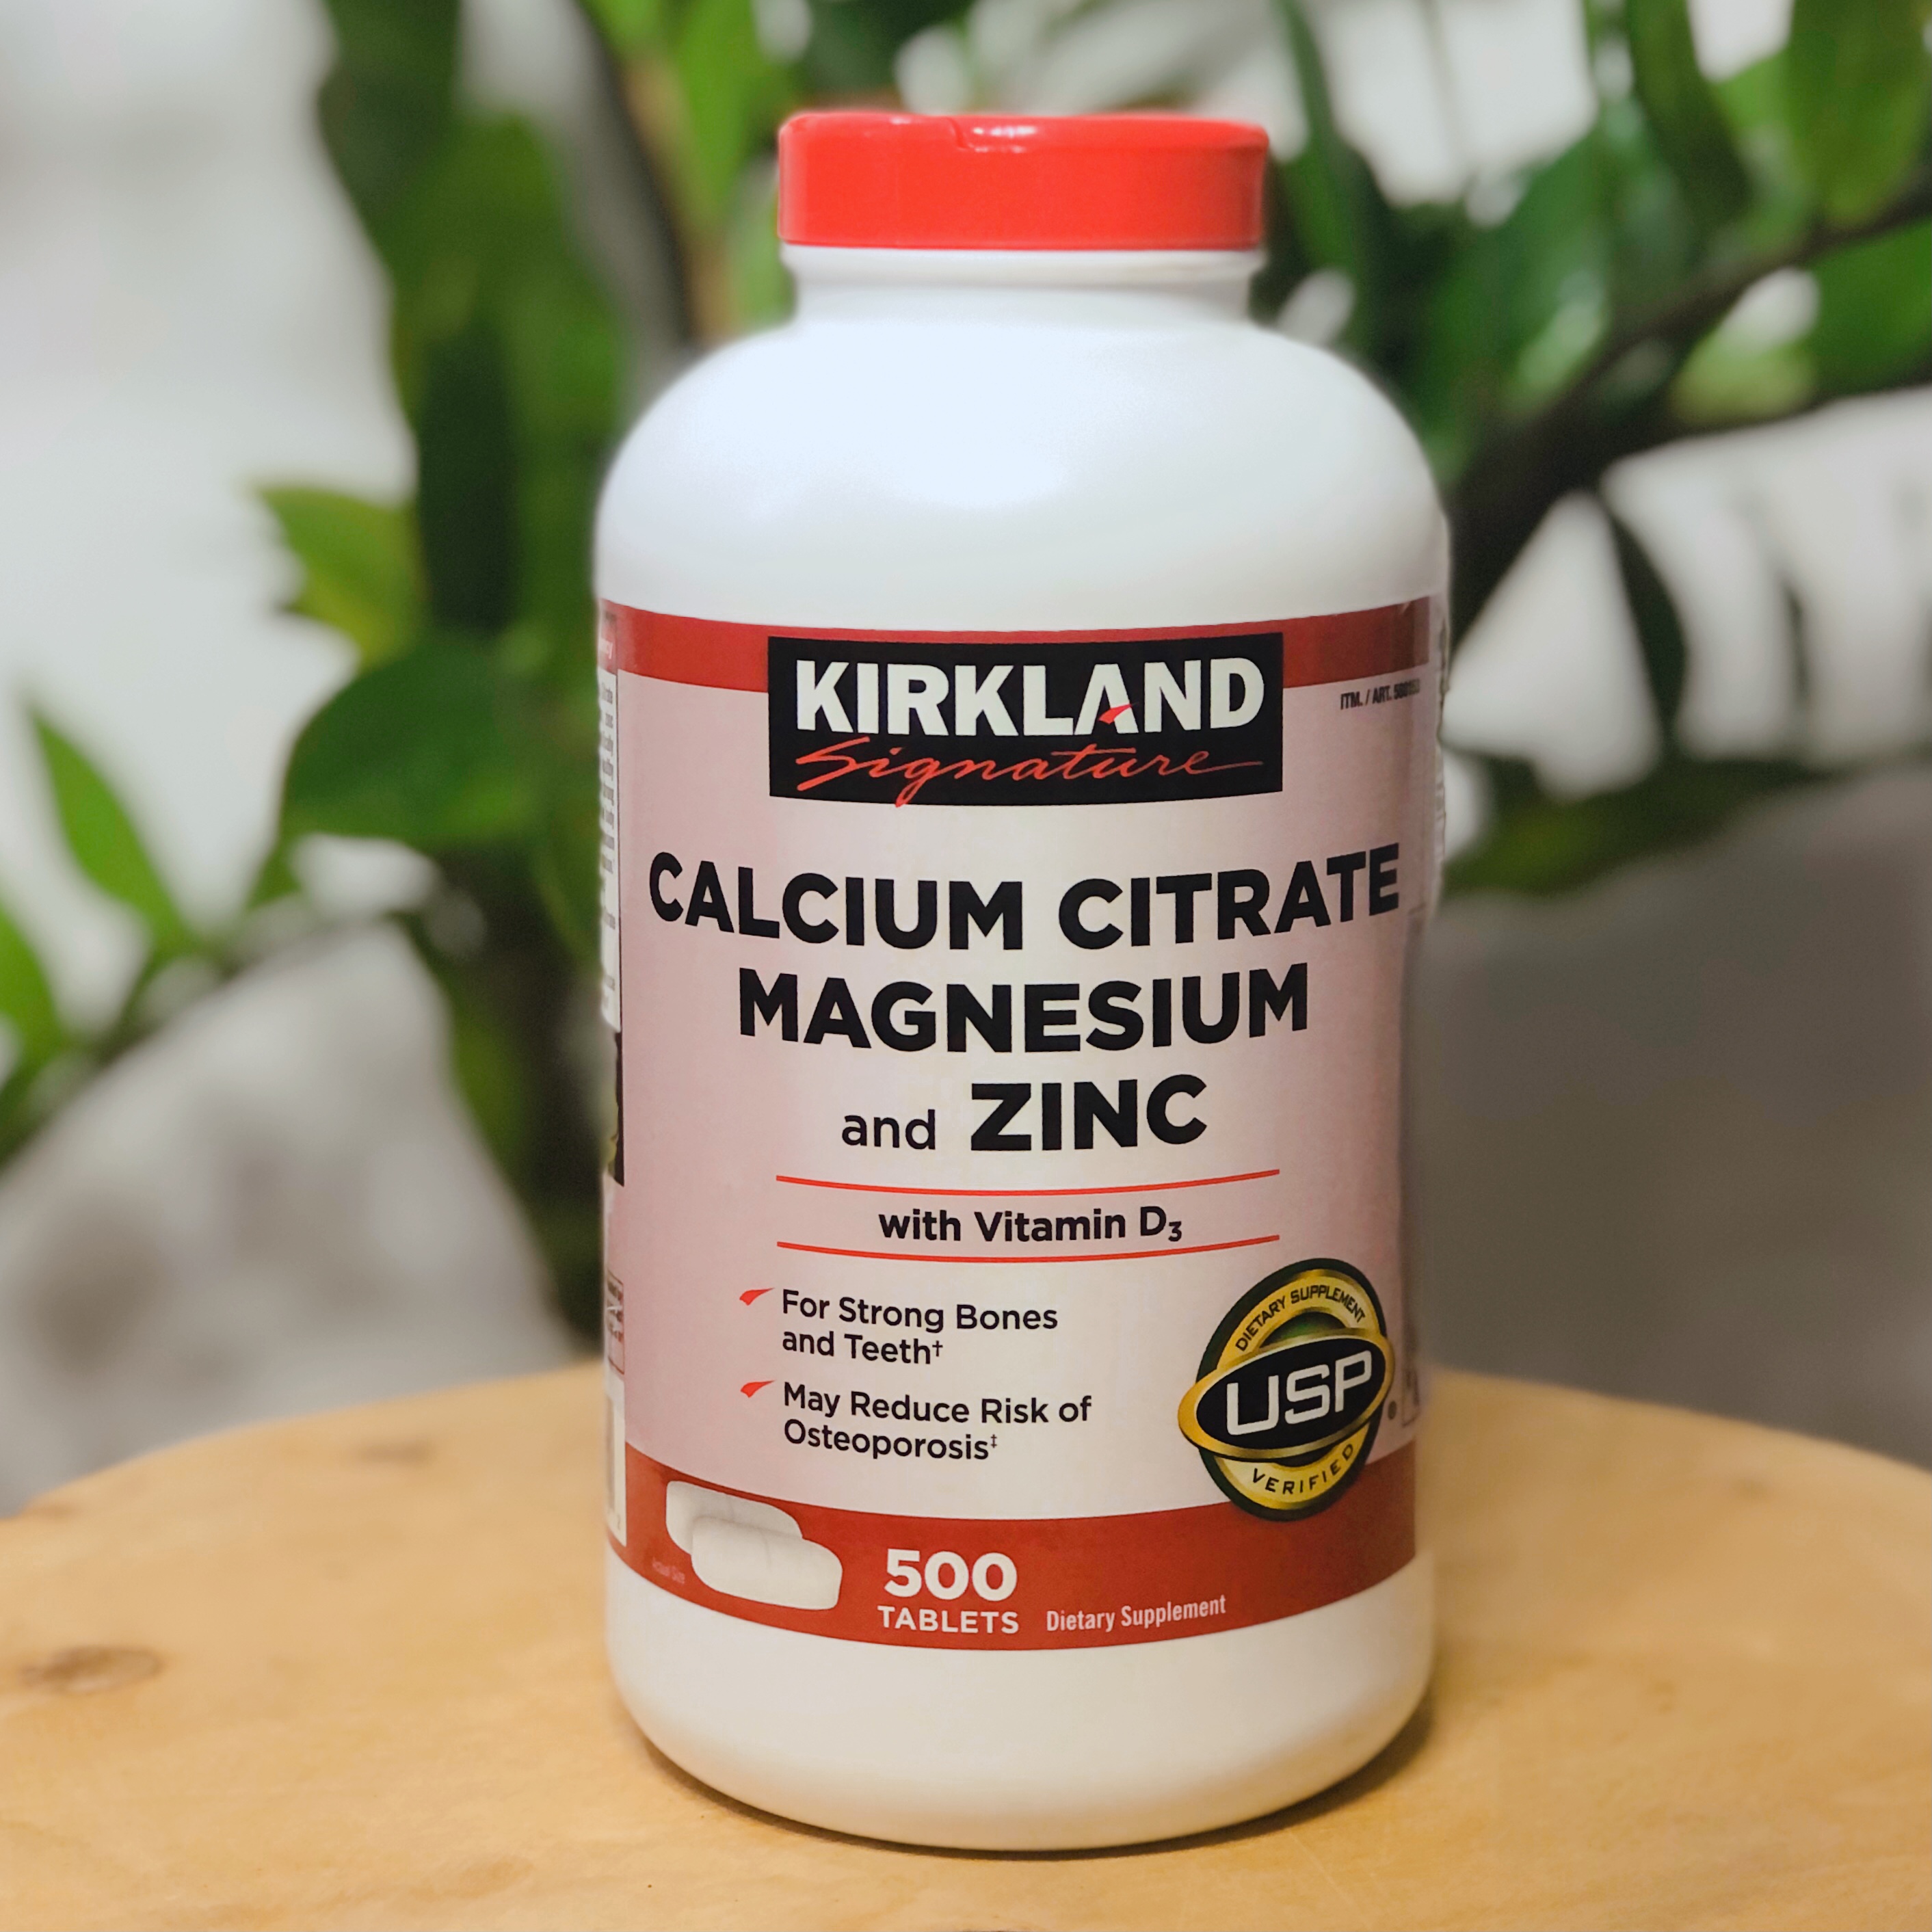 Viên Uống Chắc Xương Kirkland Calcium Citrate, Magnesium and Zinc With Vitamin D Hộp 500 Viên giúp bổ sung và tăng cường các vitamin và khoáng chất giúp xương chắc khỏe và